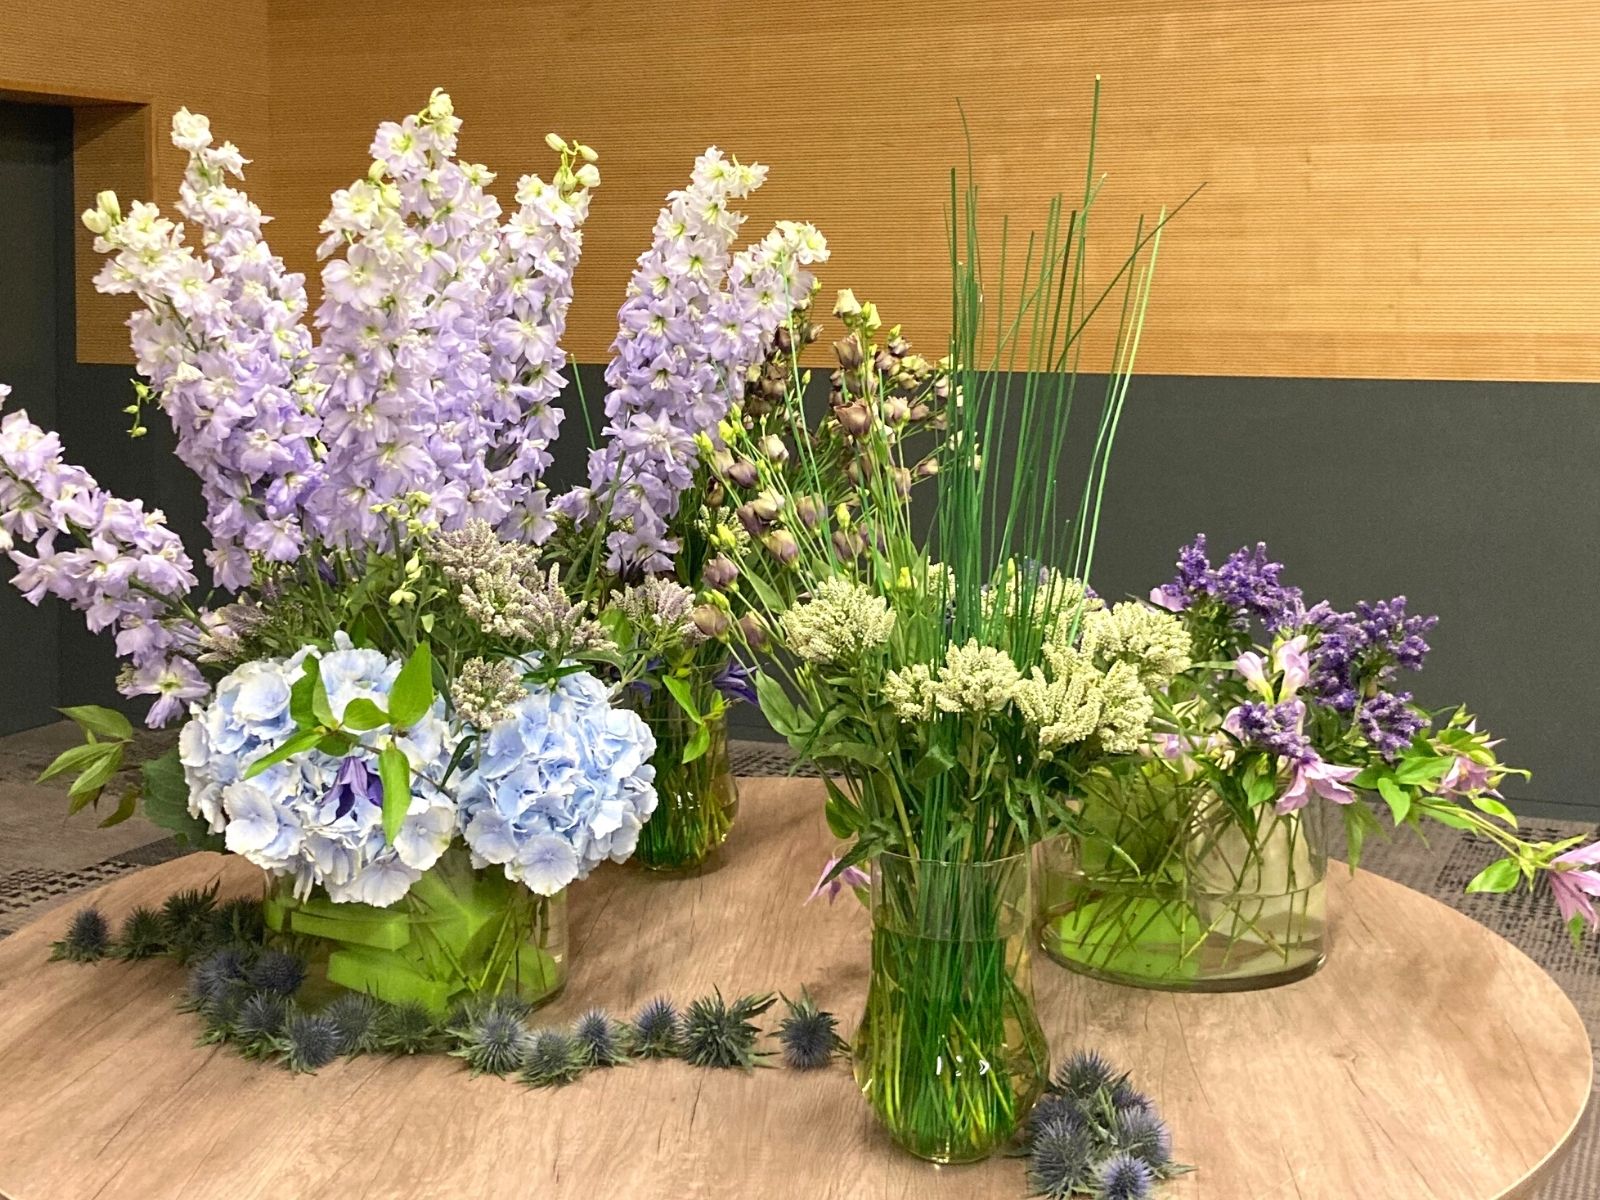 Florius Veronica Smart Aqua Mix Series in Four Vases on Thursd